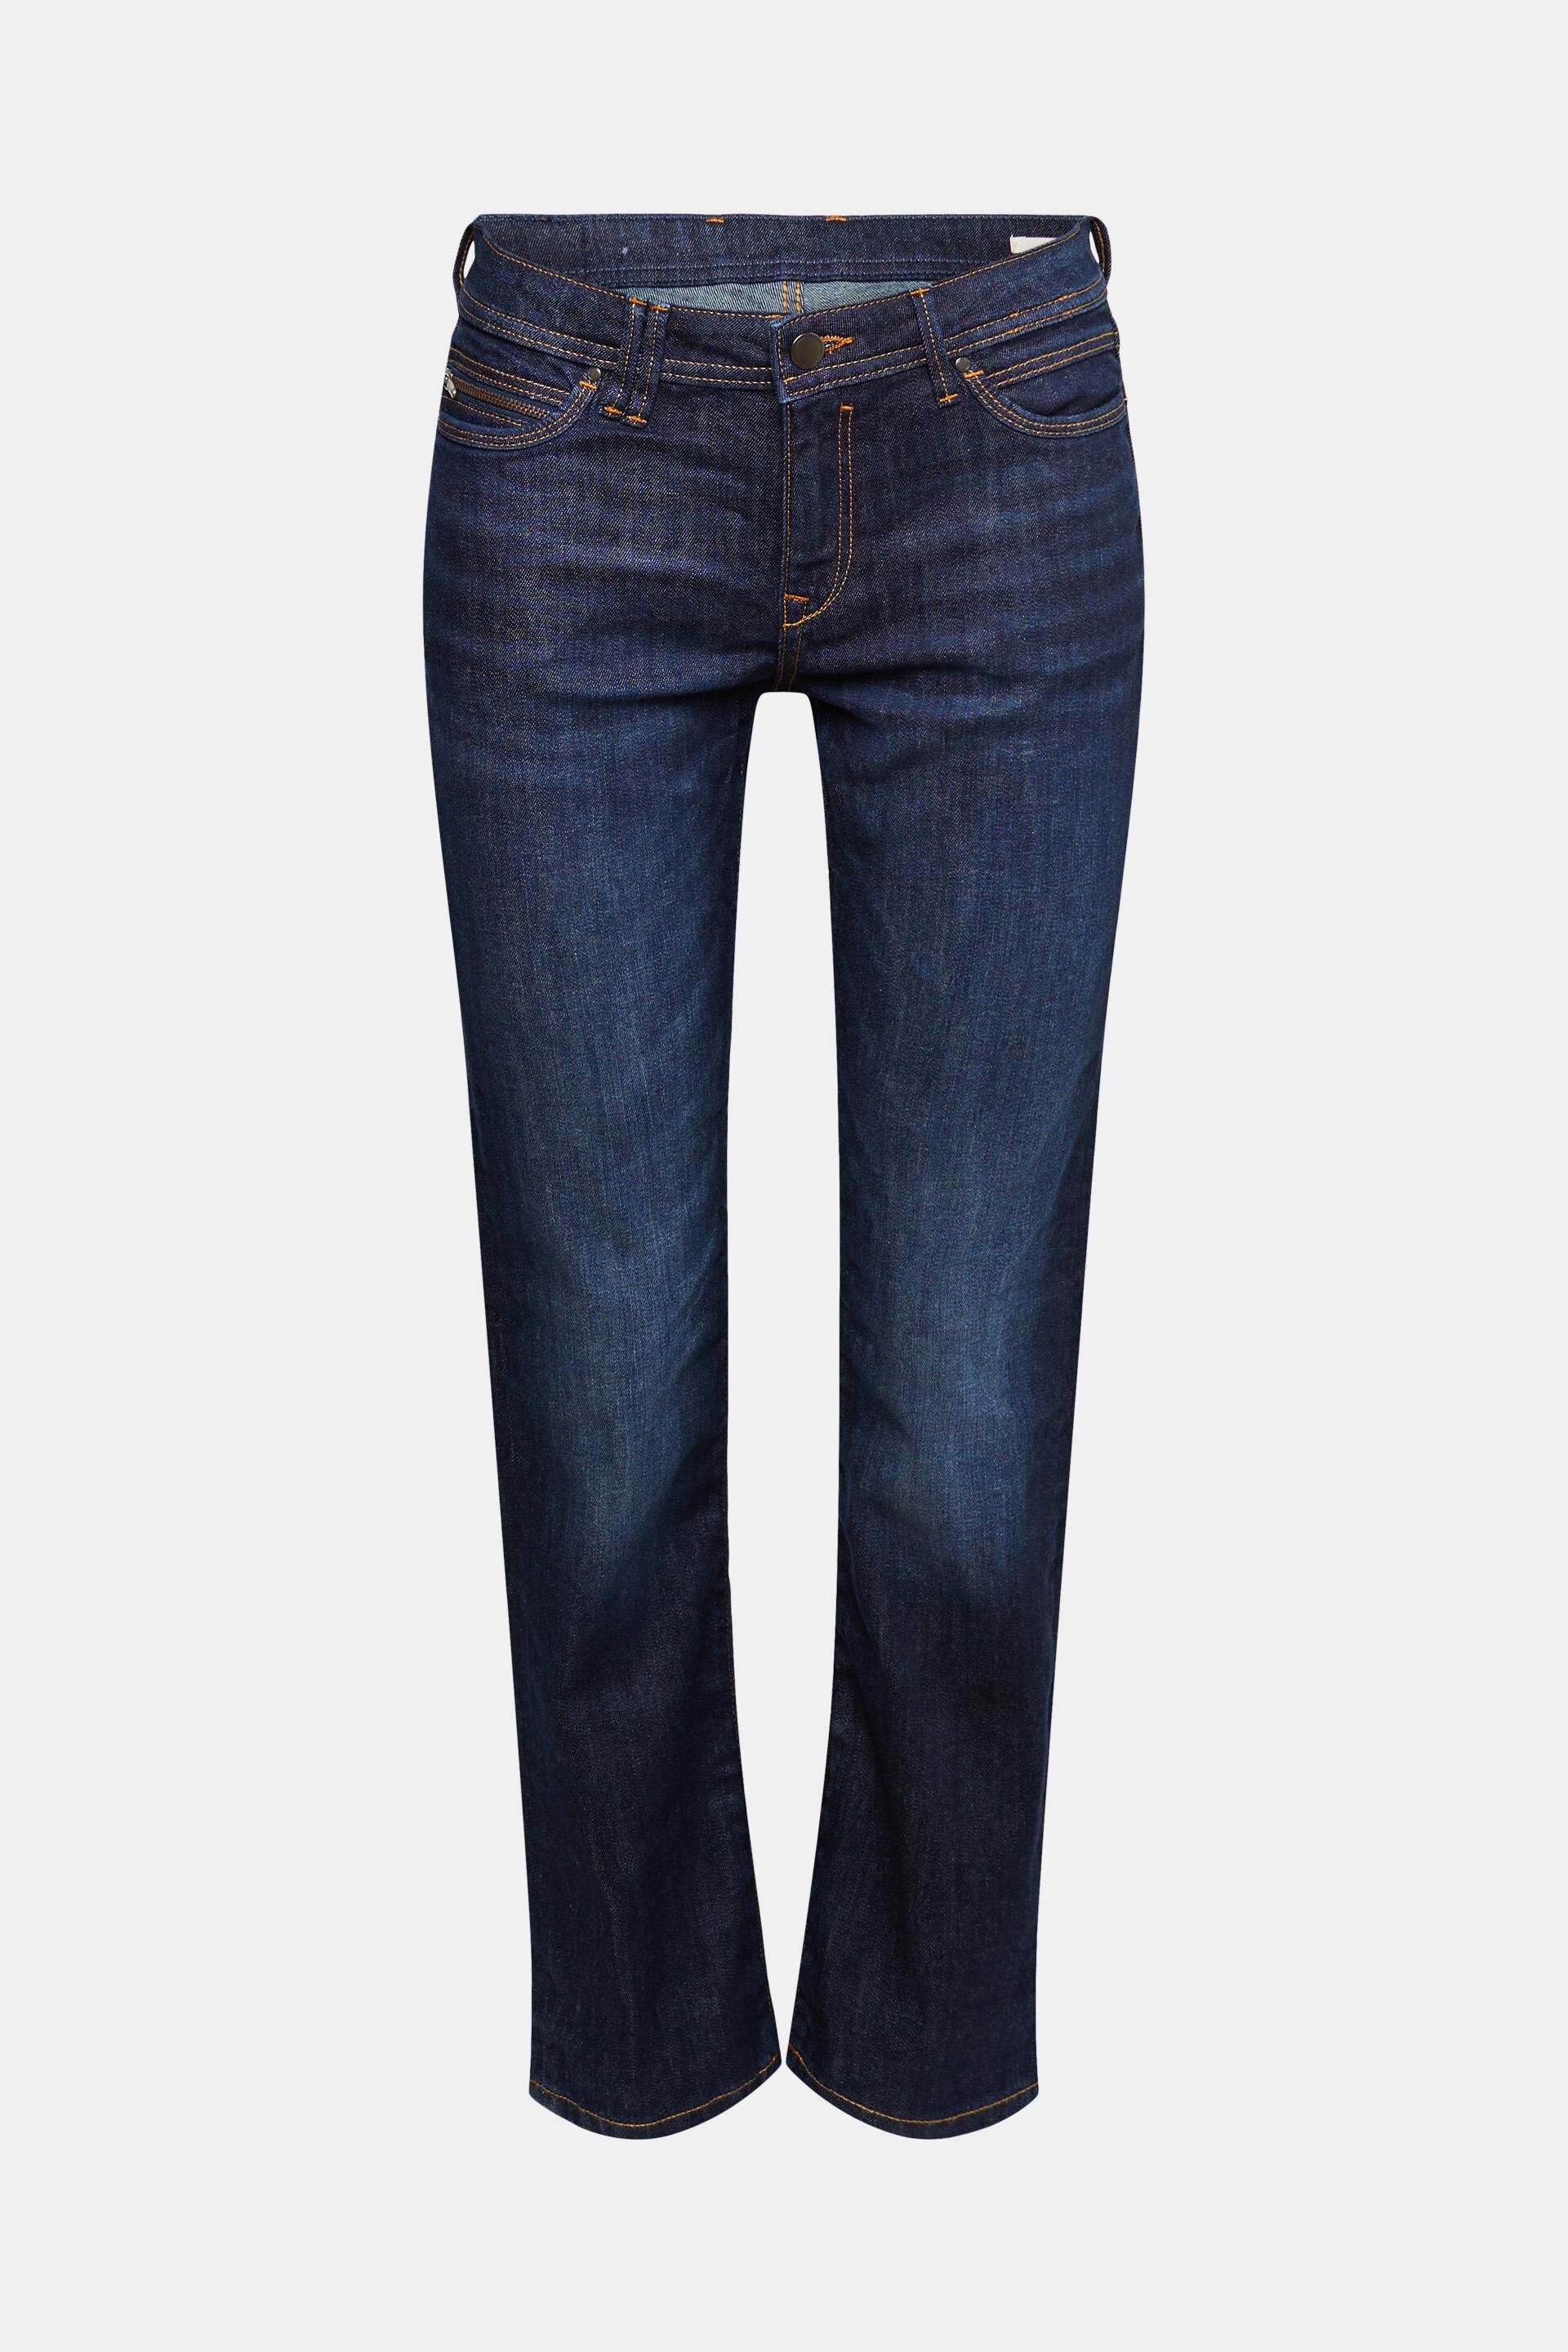 Balmain Baumwolle High-Rise Straight Jeans in Blau Damen Bekleidung Jeans Ausgestellte Jeans 